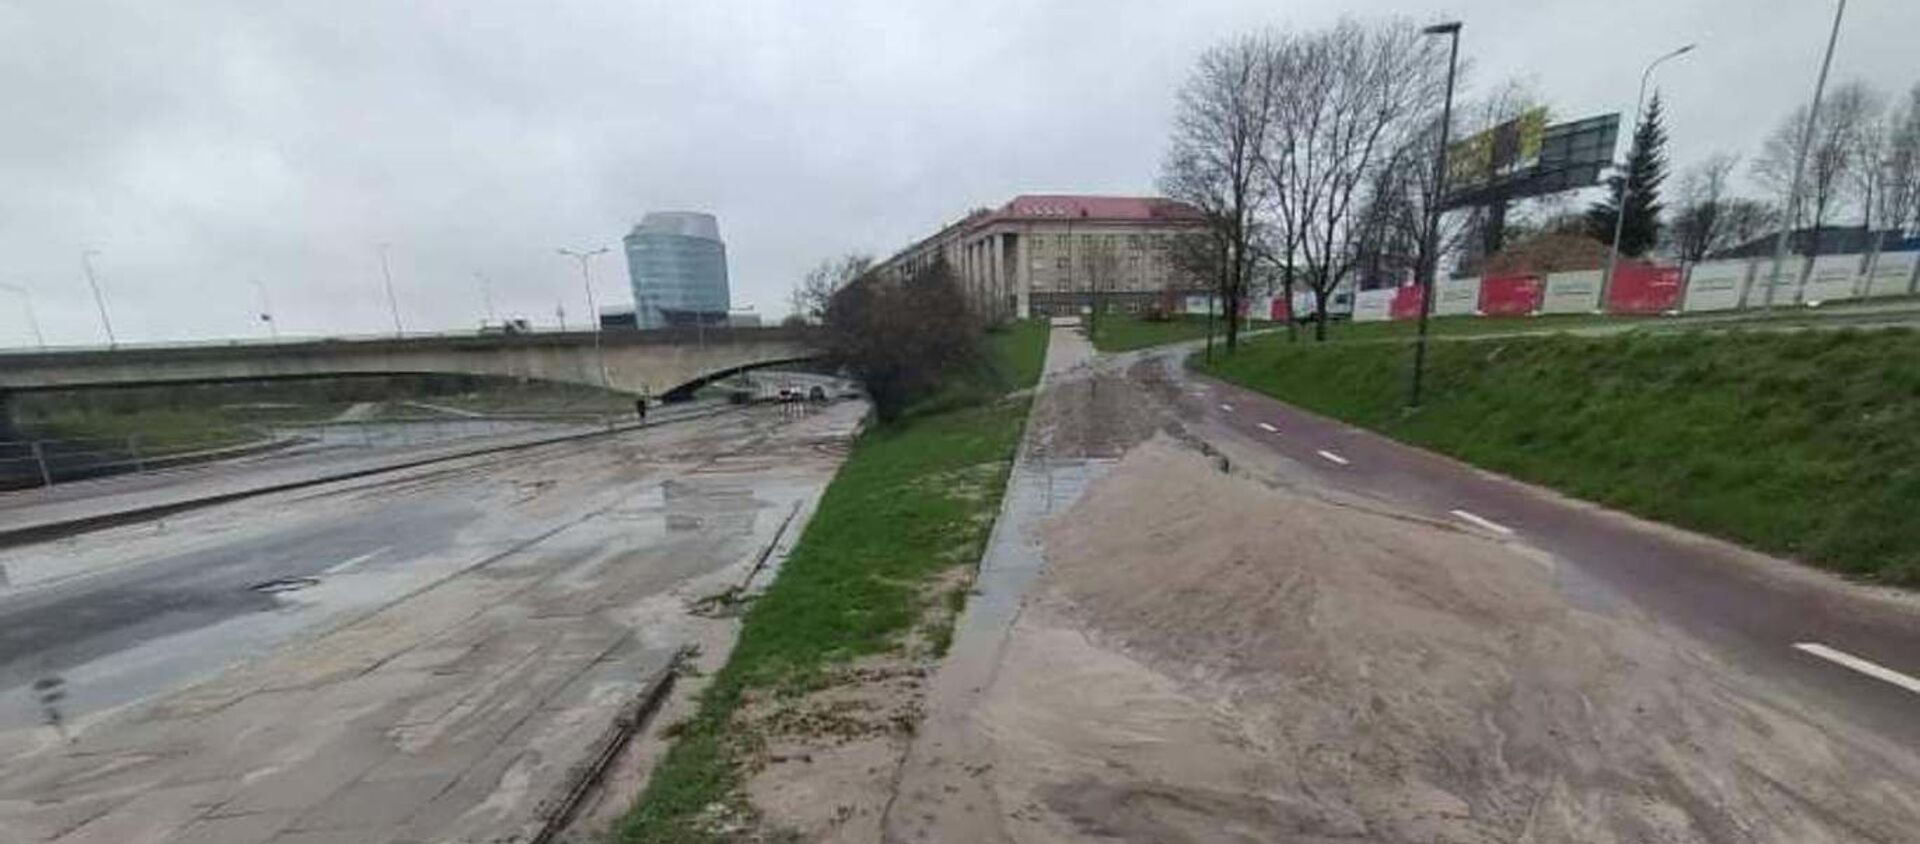 Улицу Упес в Вильнюсе залило водой из-за аварии с водопроводом, 23 апреля 2021 года - Sputnik Lietuva, 1920, 23.04.2021